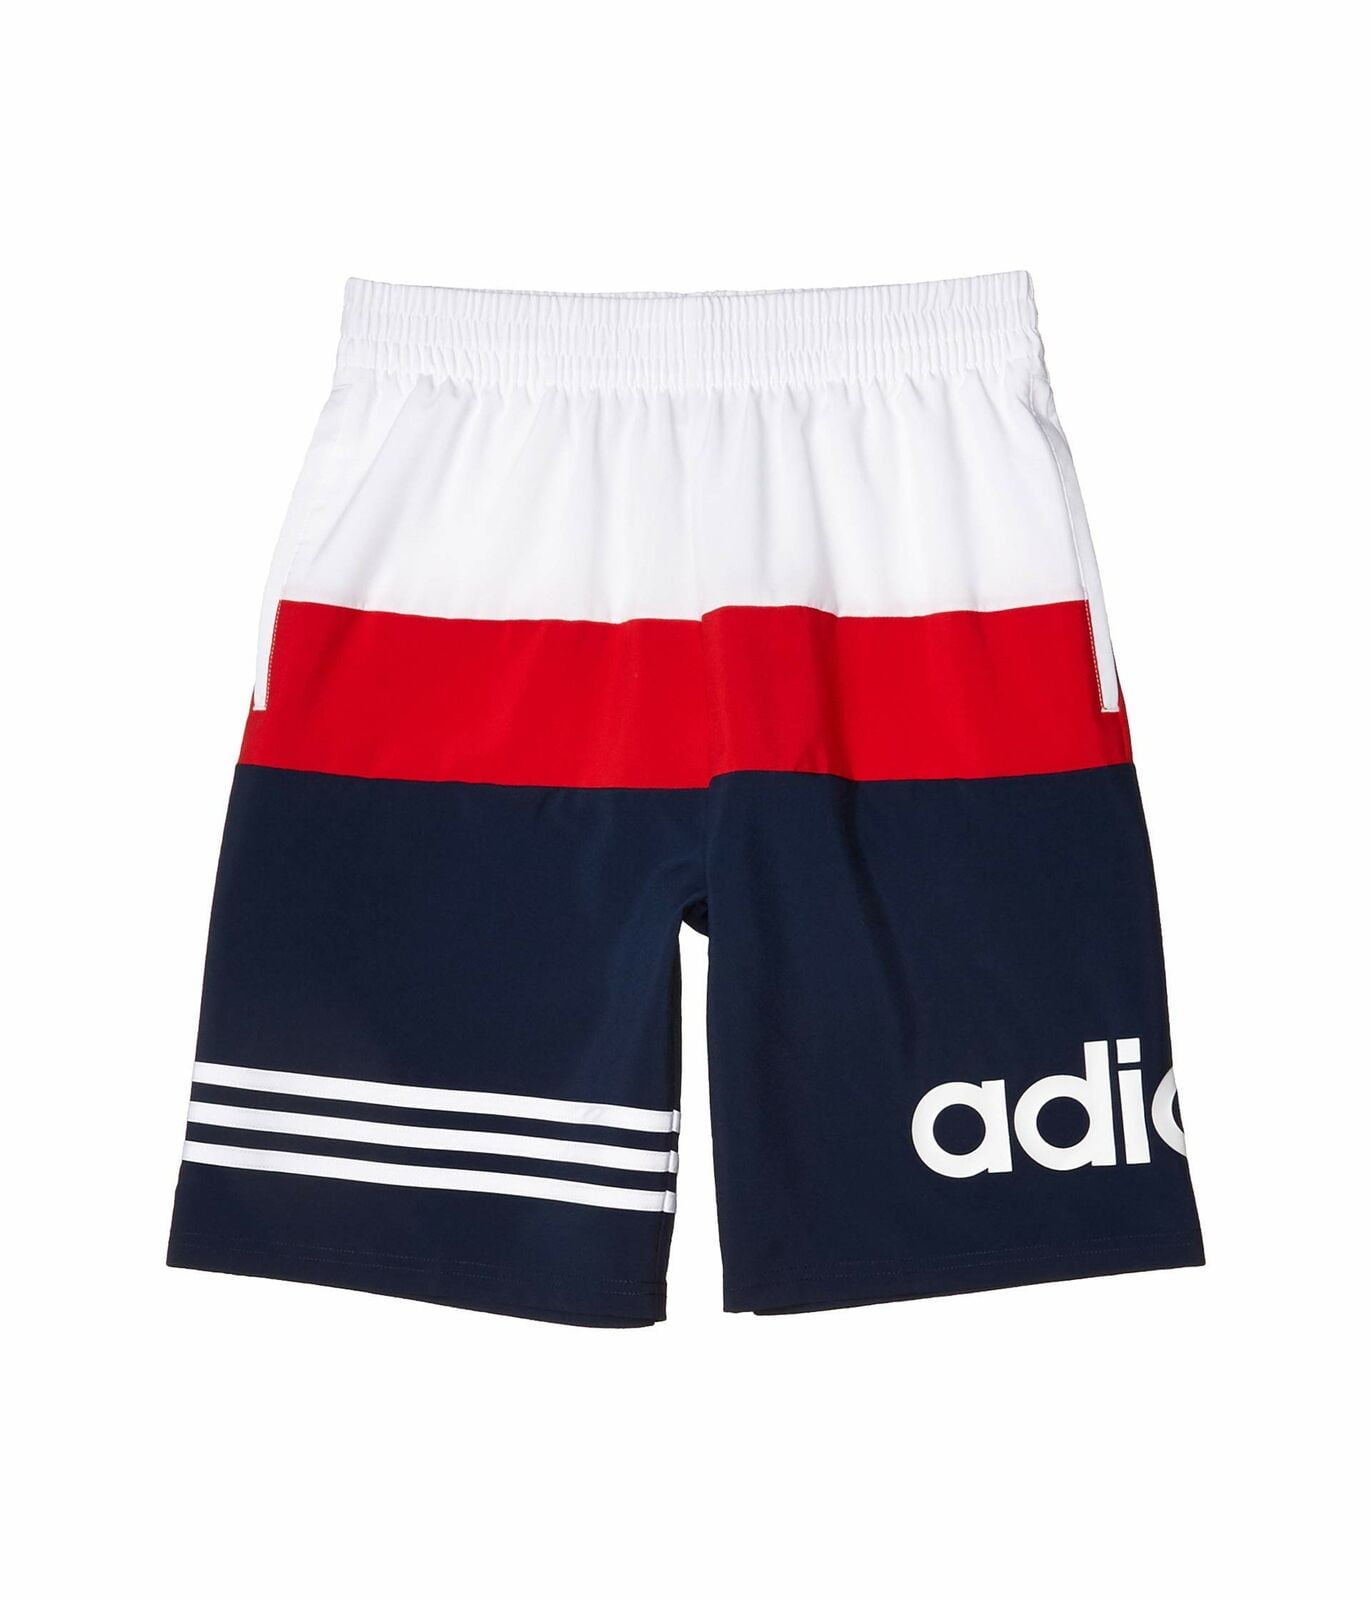 adidas Kids Shorts Size Large (youth 14/16) - Walmart.com